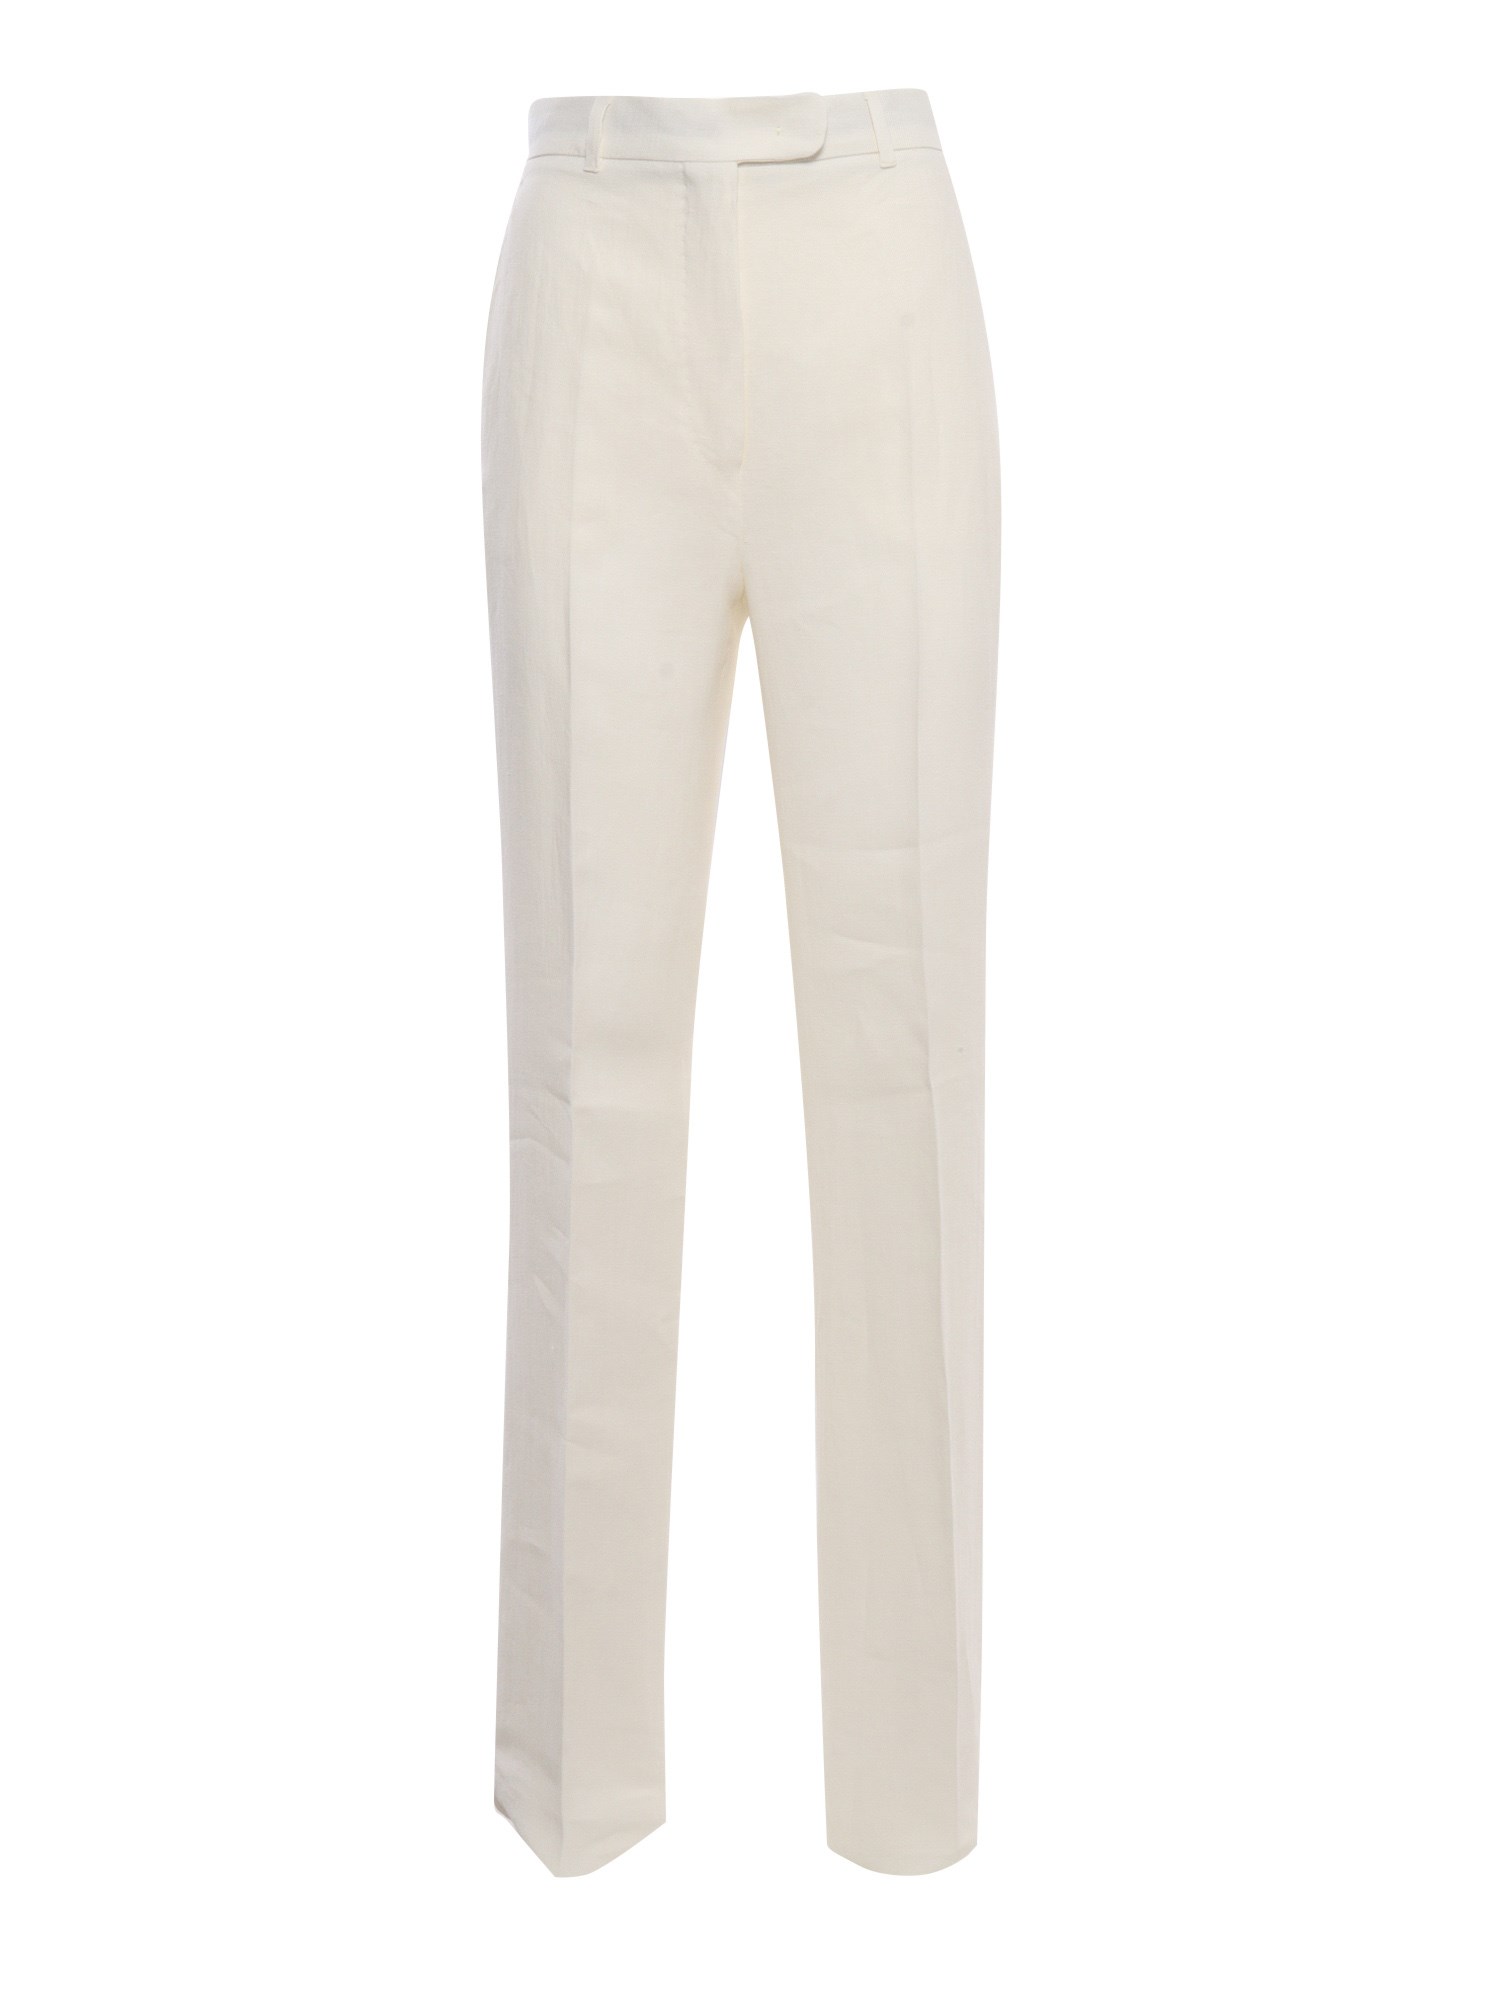 Max Mara Alcano White Trousers